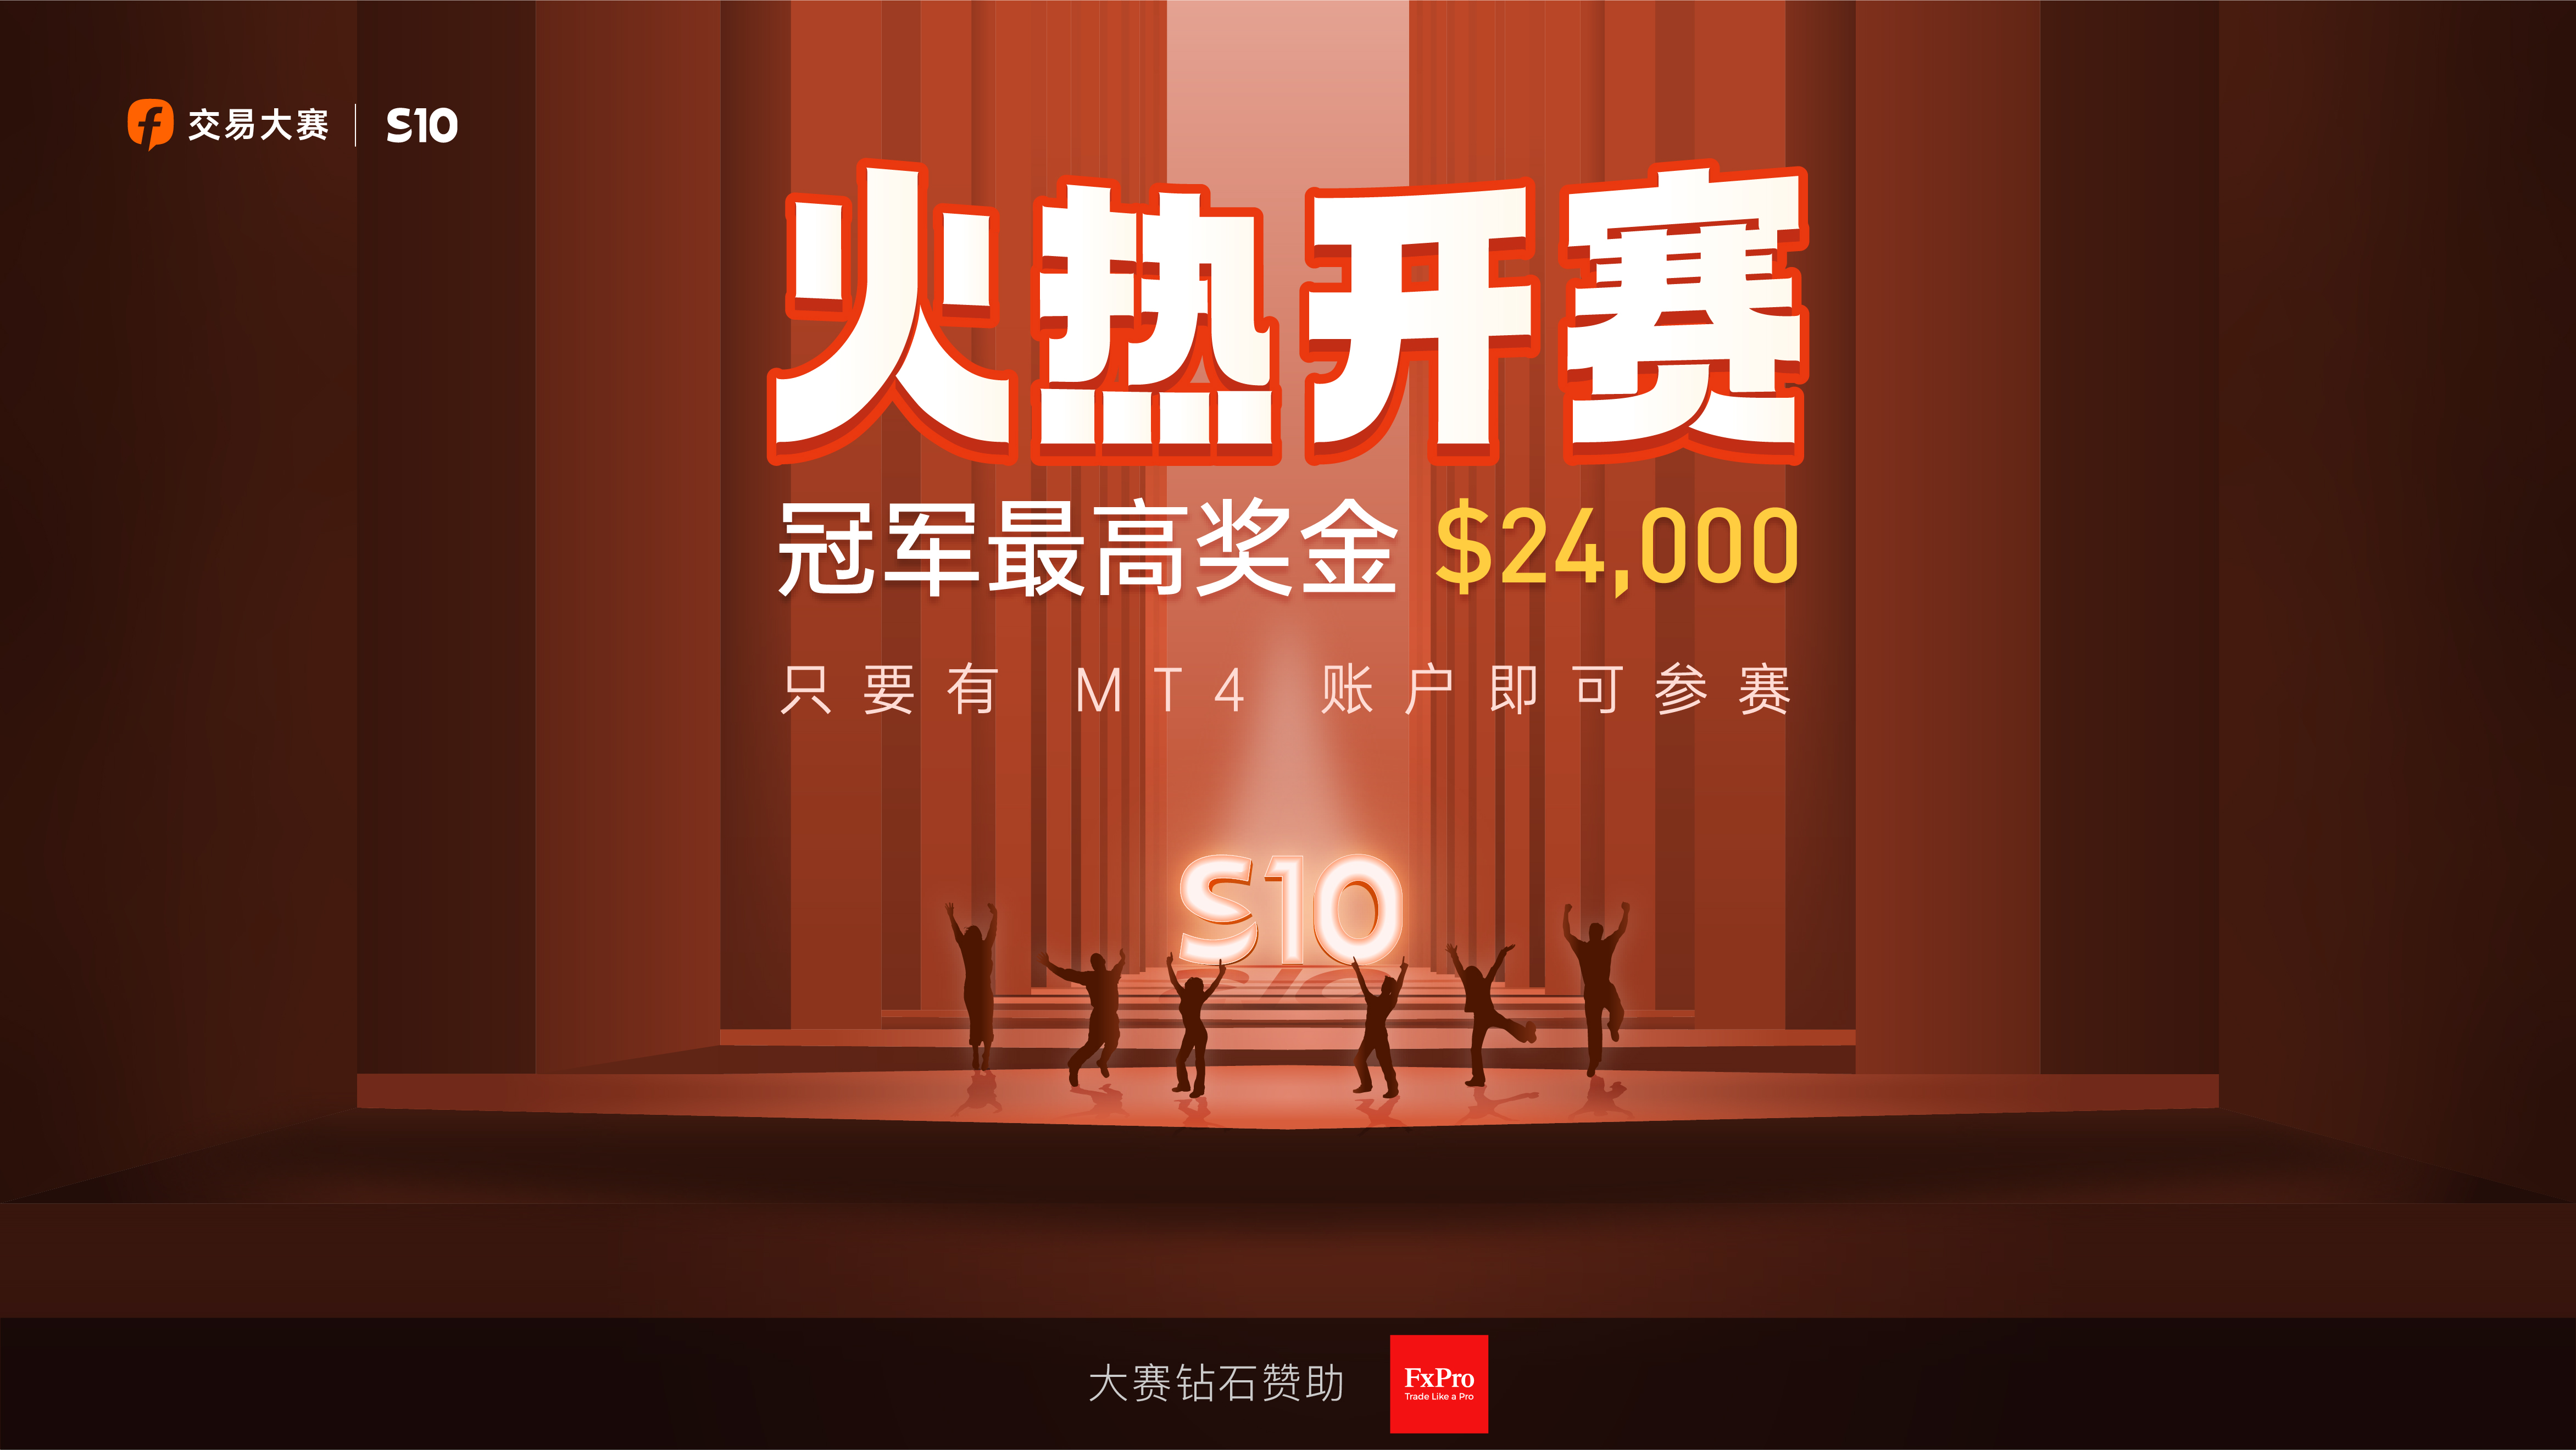 一个MT4账户即可挑战 $24,000 奖金，浦汇赞助更霸气